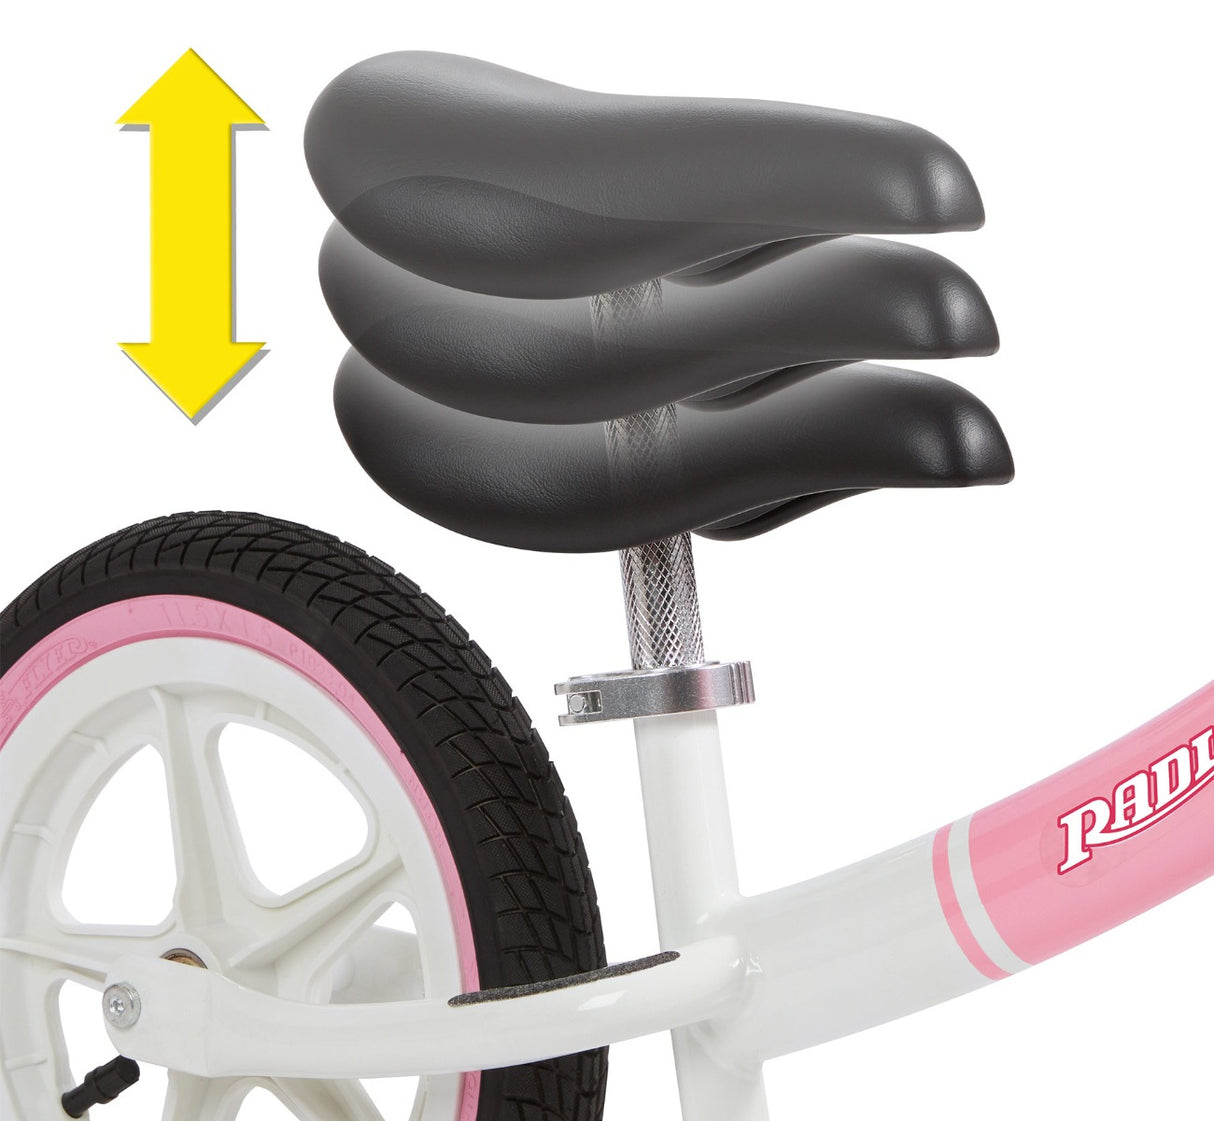 Air Ride Balance Bike Pink's Adjustable Seat